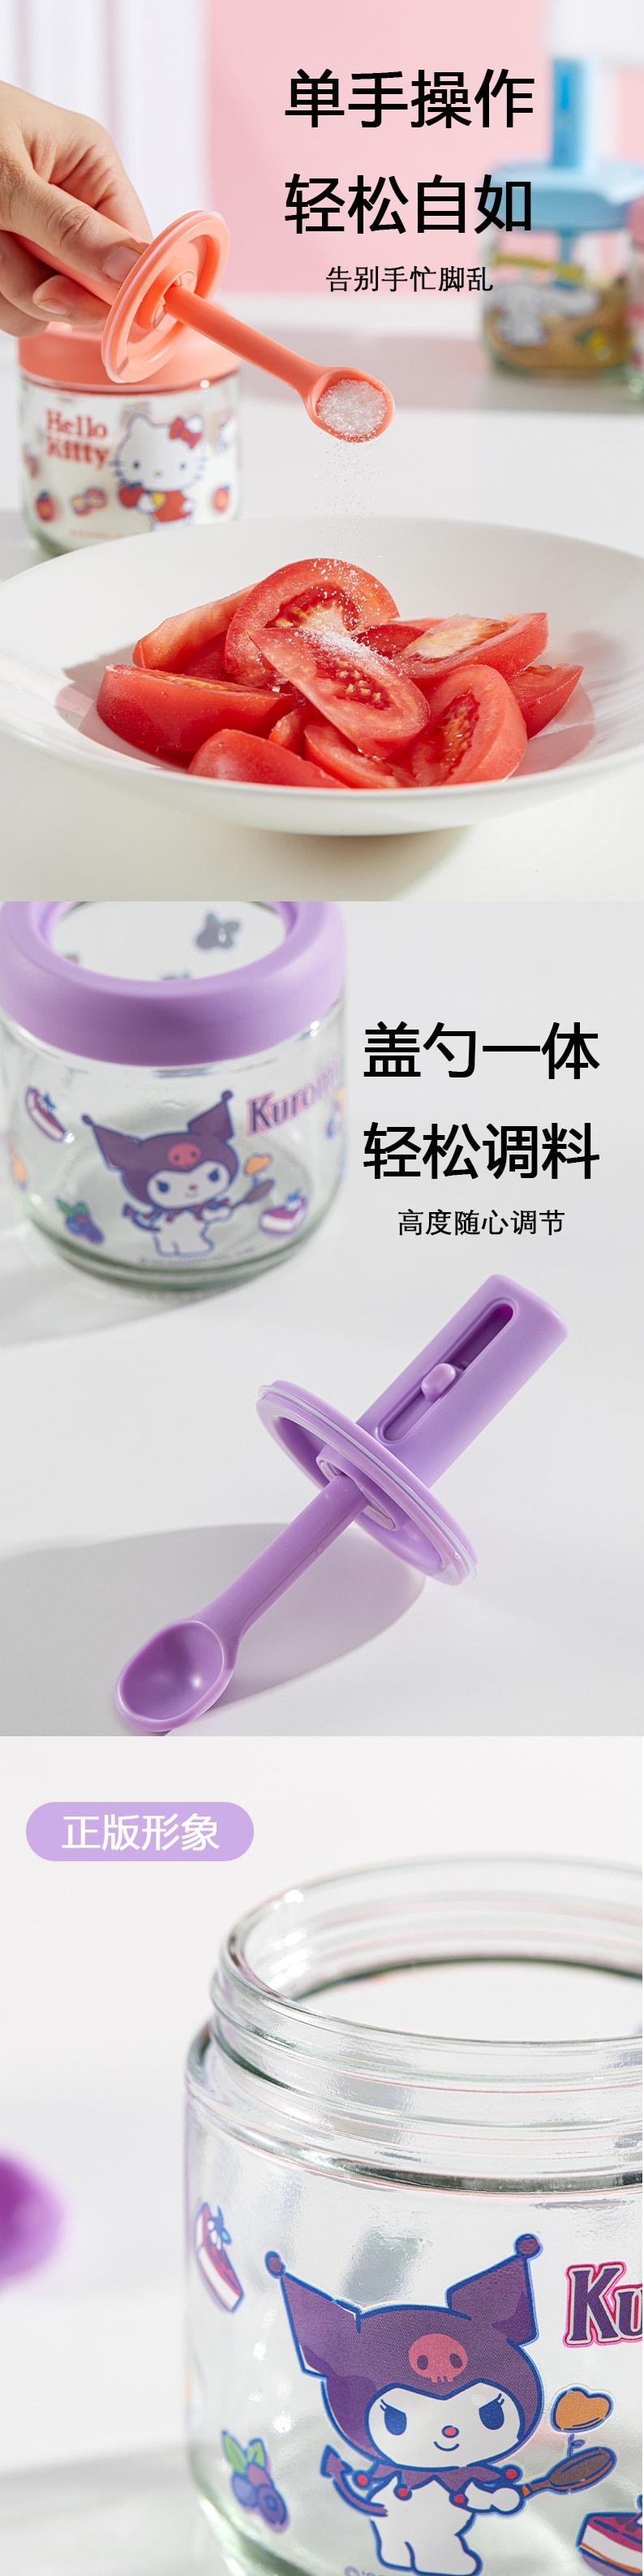 【中國】FOXTAIL三麗鷗玻璃調味罐 調味瓶 可愛卡通調味罐 -凱蒂貓 Hello Kitty 1個丨*預計到達時間3-4週